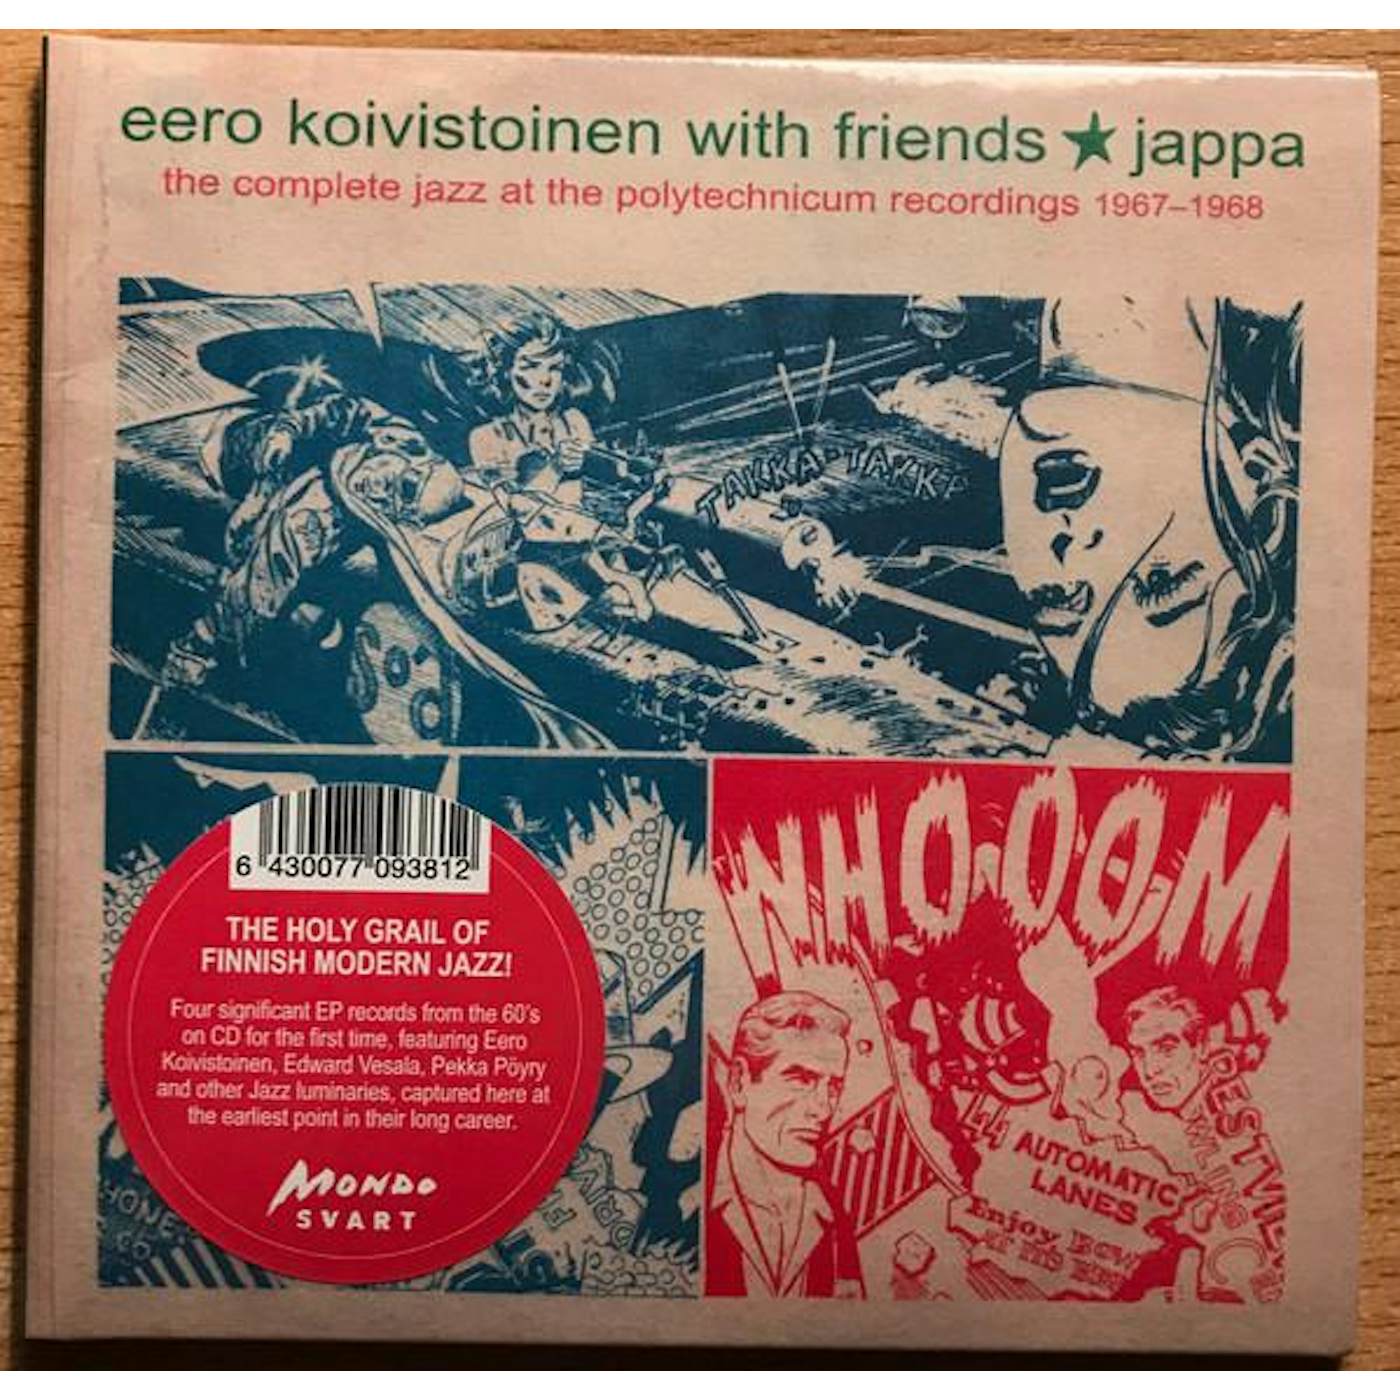 Eero Koivistoinen JAPPA:COMPLETE JAZZ AT THE POLYTECHNICUM 1967-1968 CD